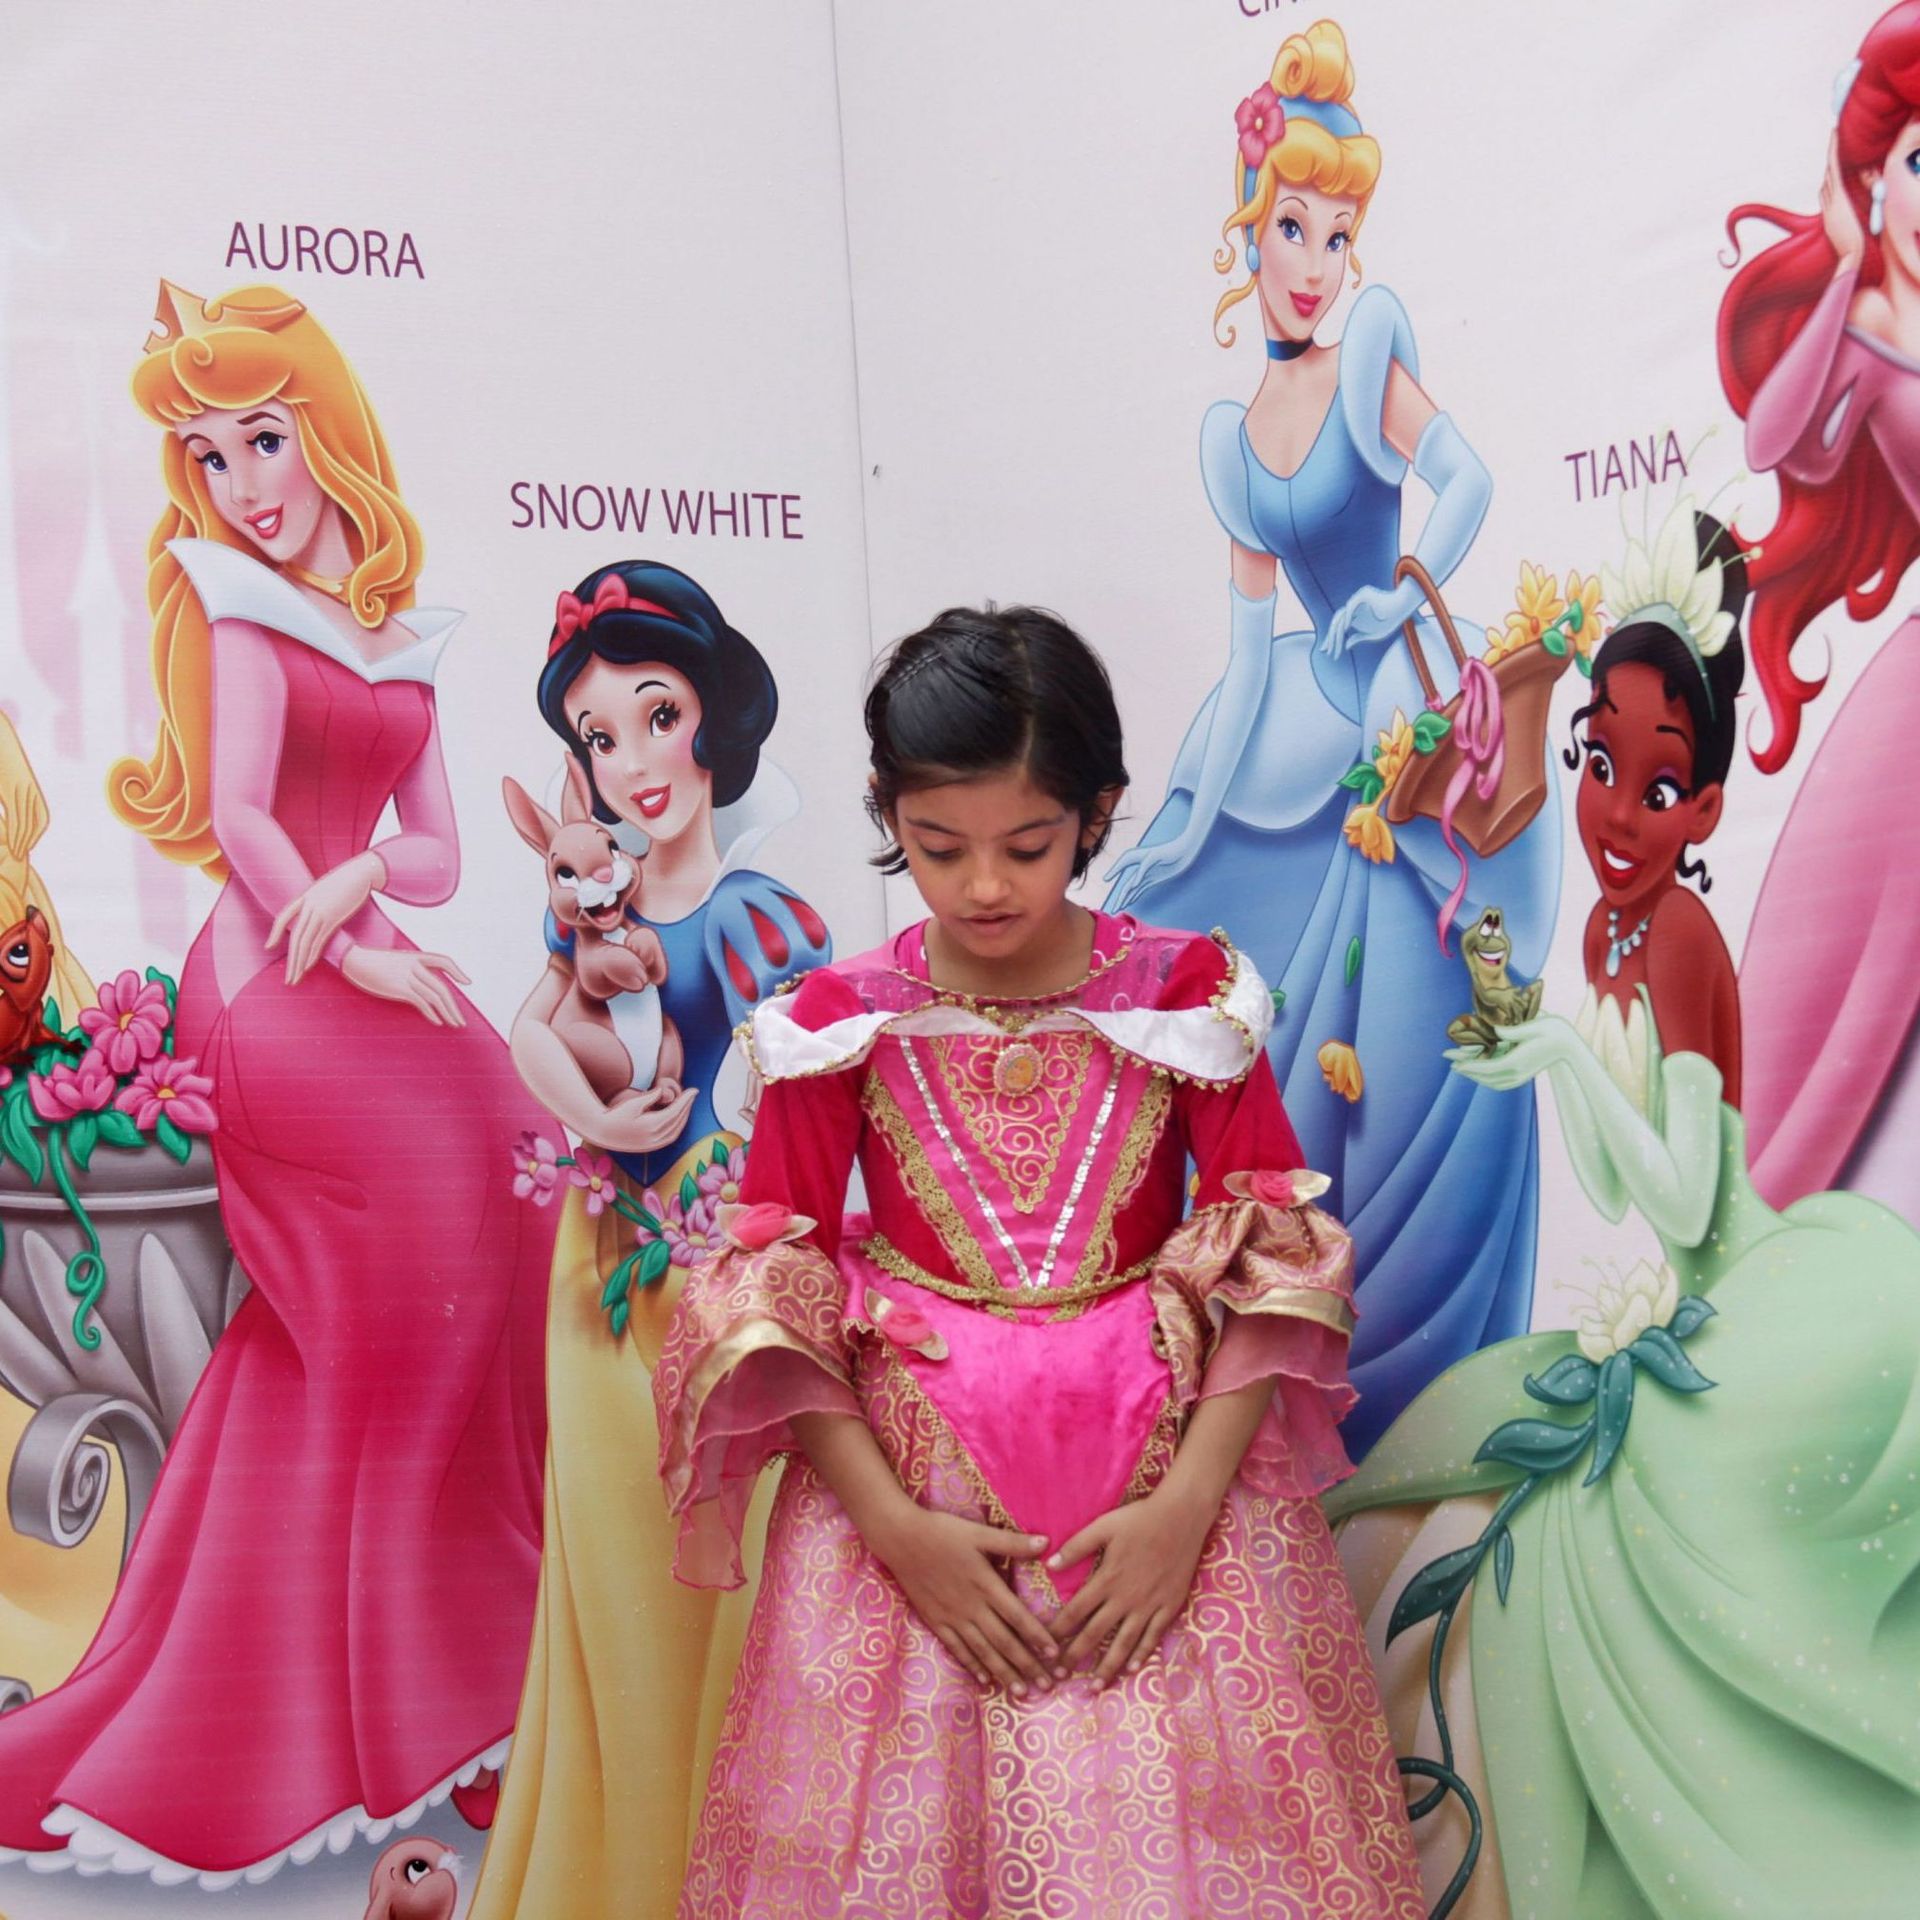 Les plus beaux jouets pour petites filles qui adorent les princesses.